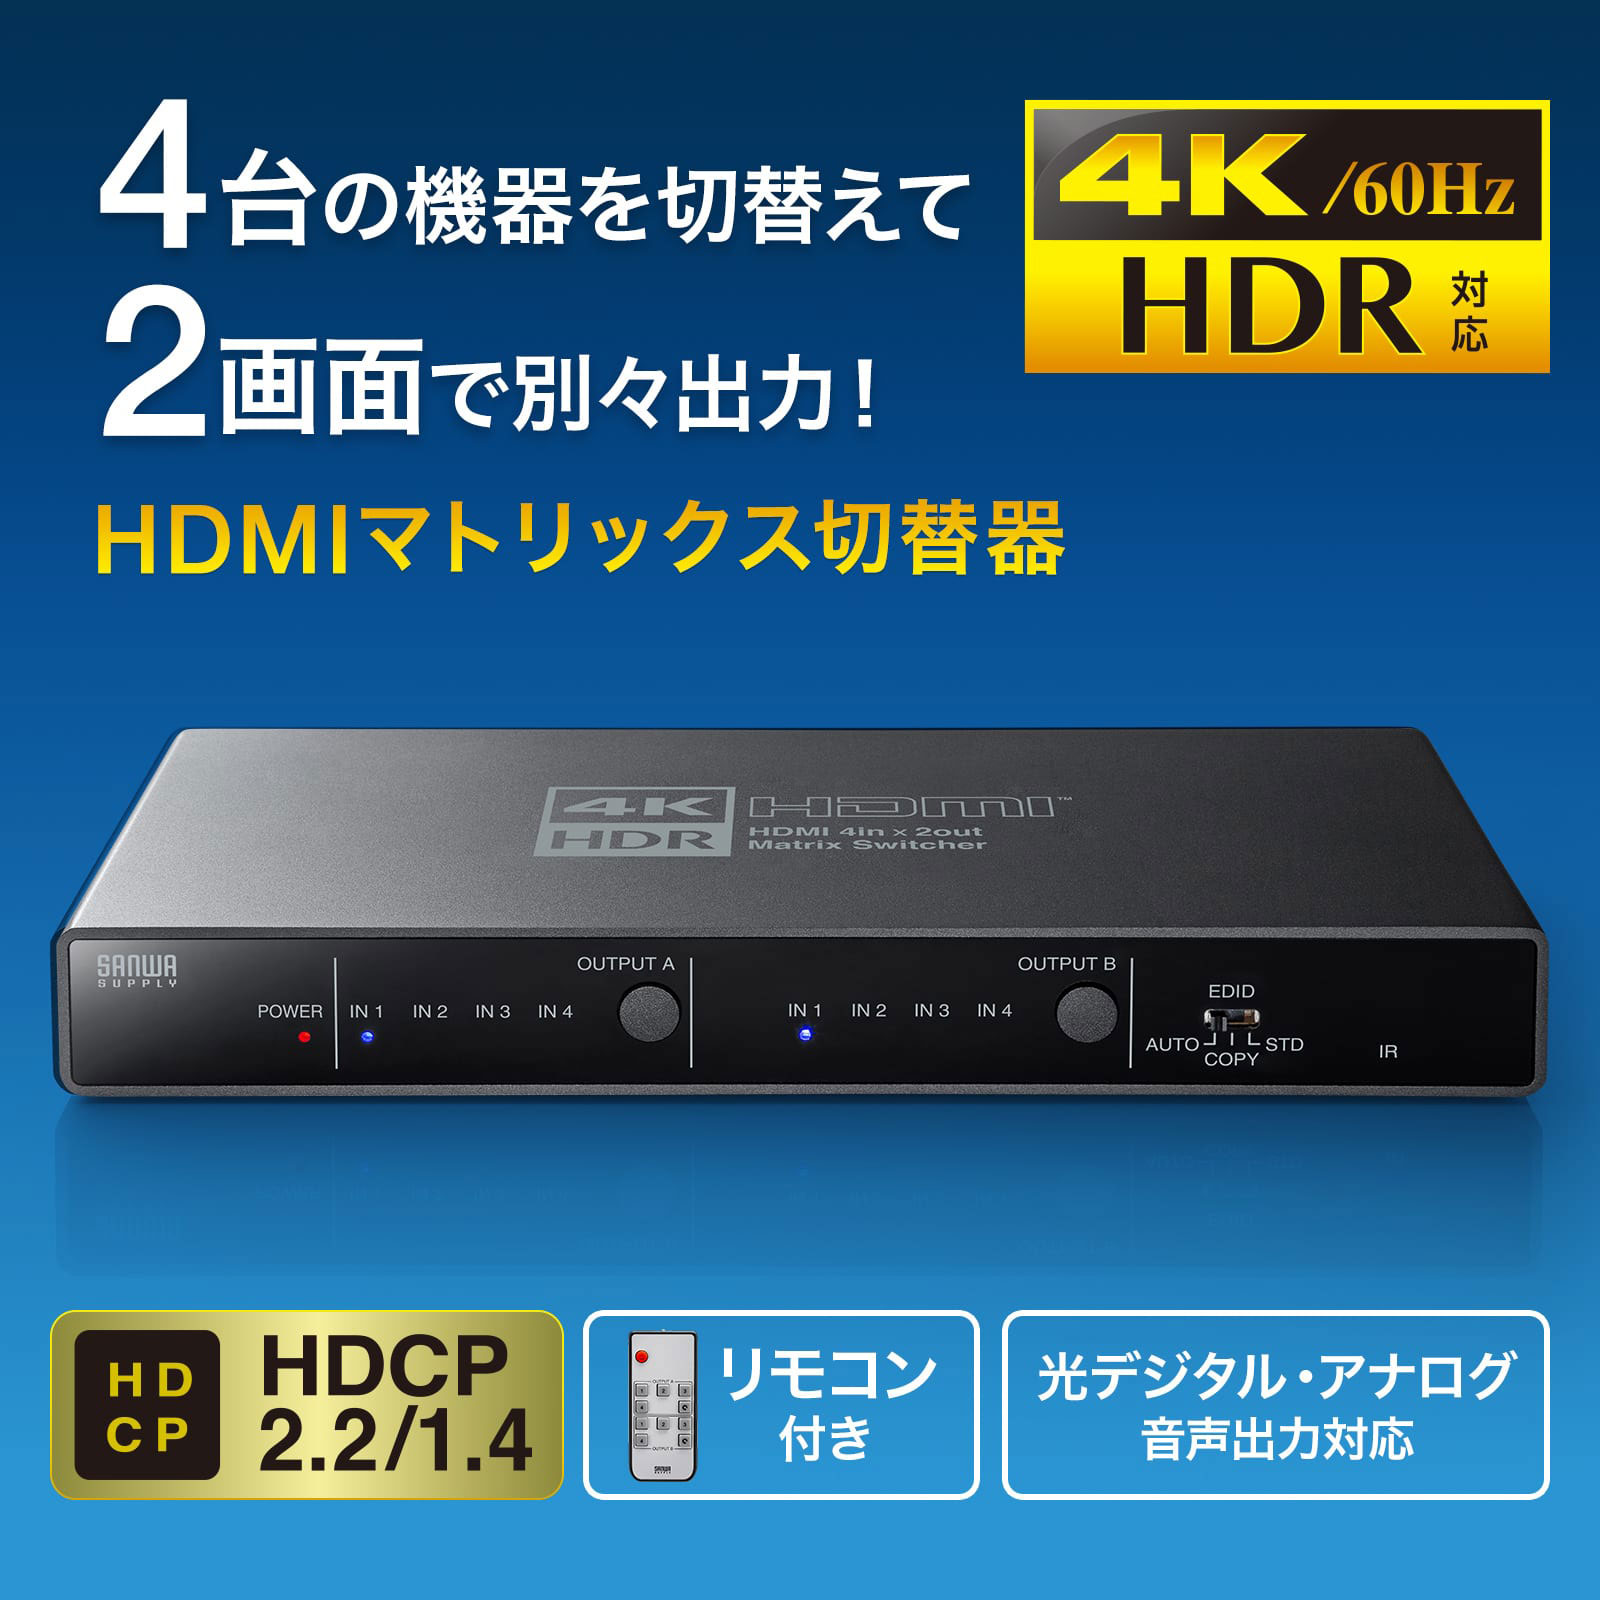 4台のHDMI機器を切り替えて2画面に映像を出力できる4K/HDR対応のHDMIマトリックス切替器を発売｜サンワサプライ株式会社のプレスリリース